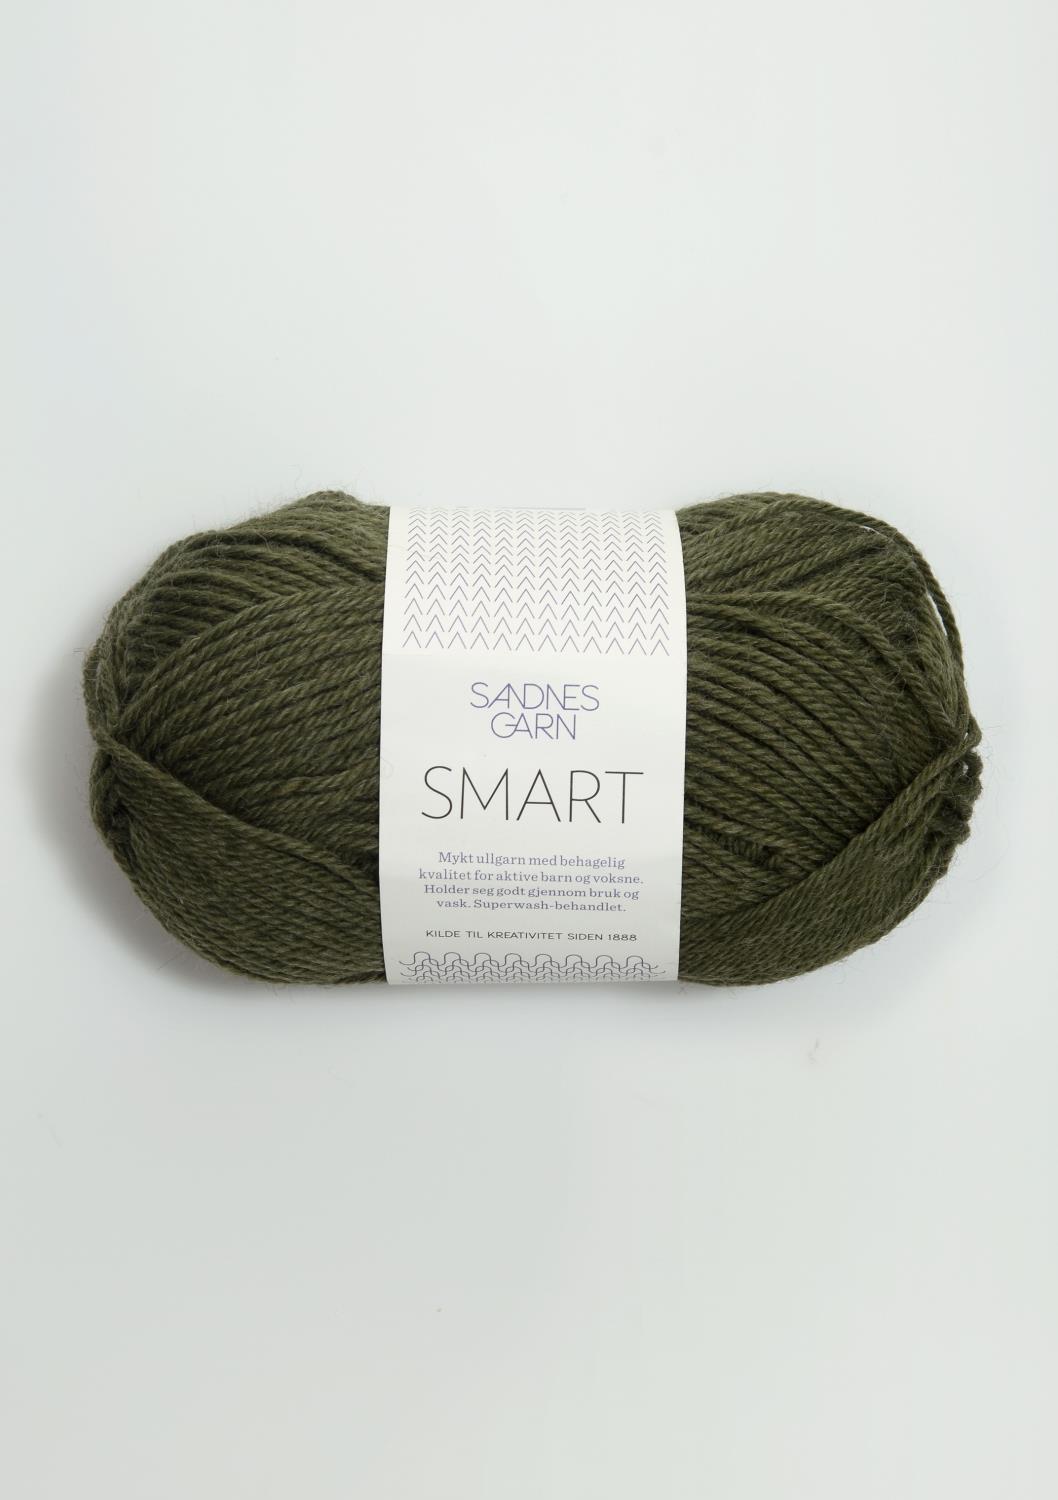 Smart Sandnes 9572 - Mørk Grønnmelert